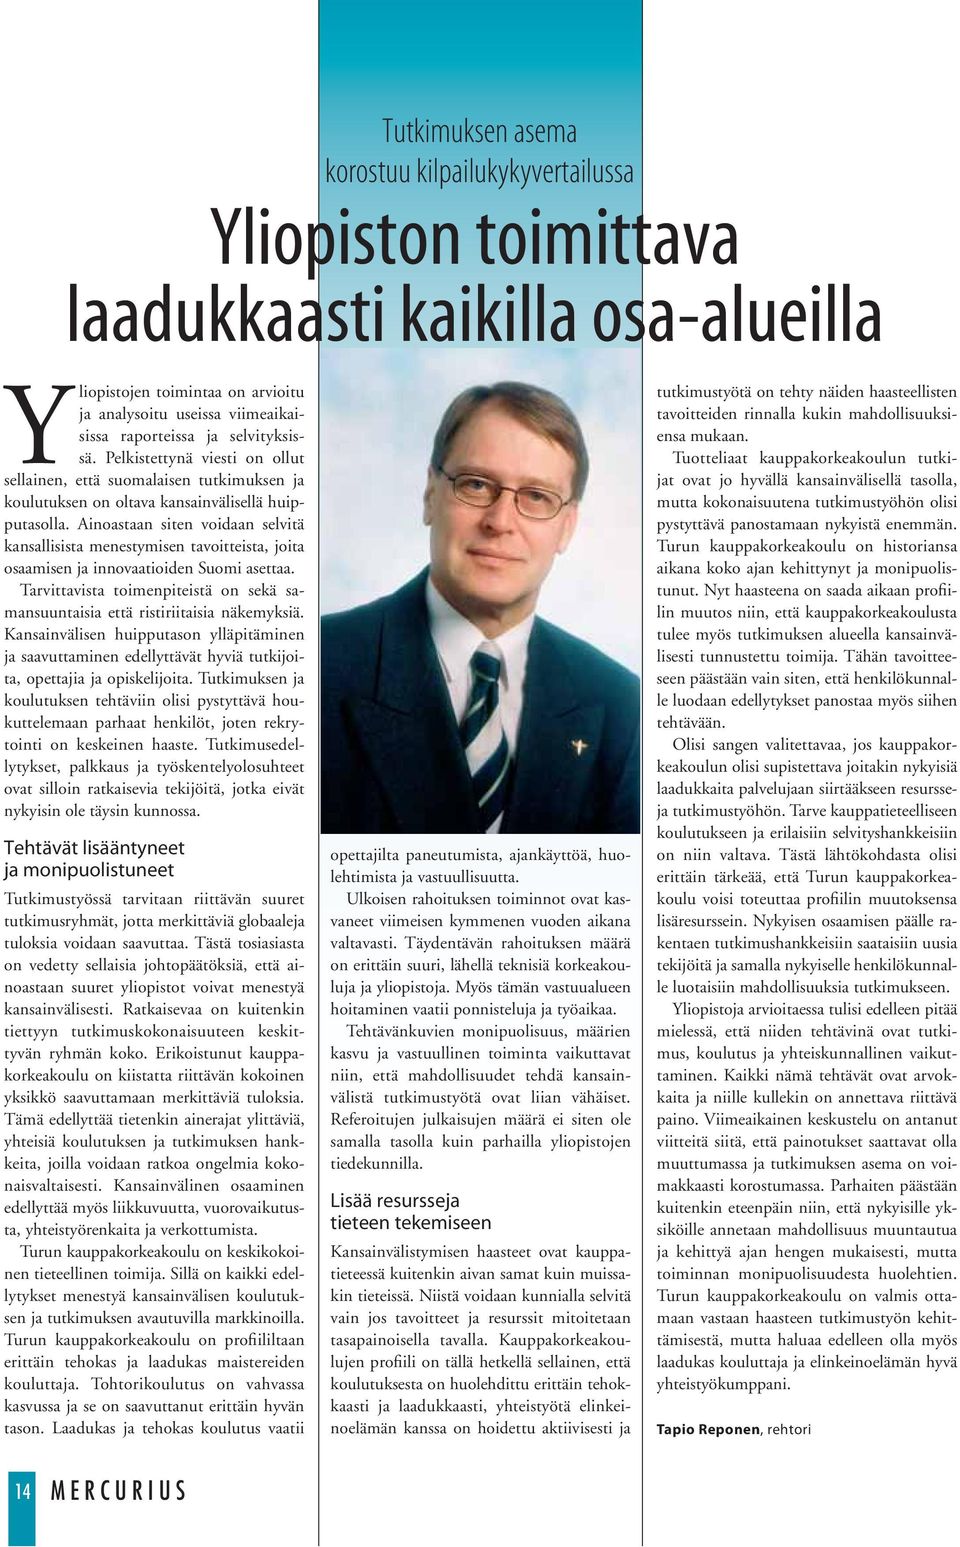 Ainoastaan siten voidaan selvitä kansallisista menestymisen tavoitteista, joita osaamisen ja innovaatioiden Suomi asettaa.